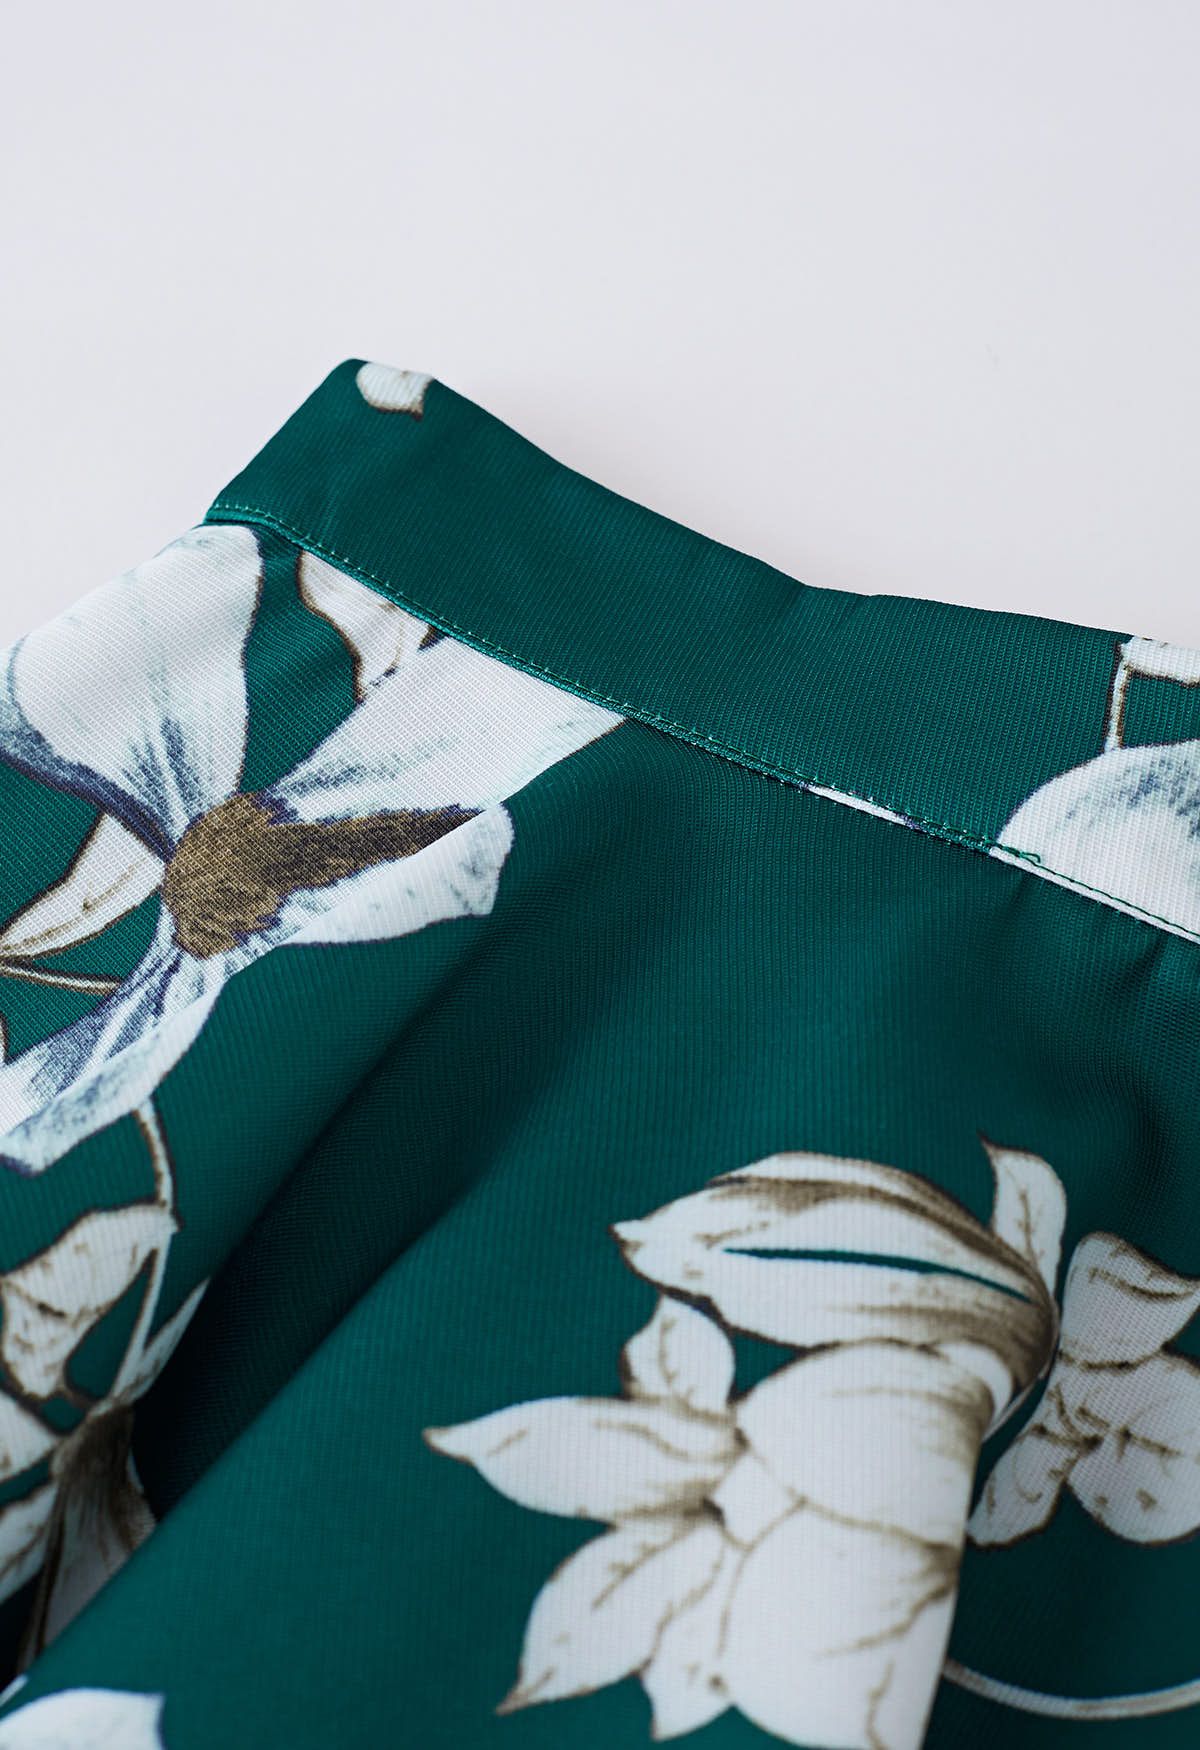 Magnolia Blossom Green Flare Midi Skirt